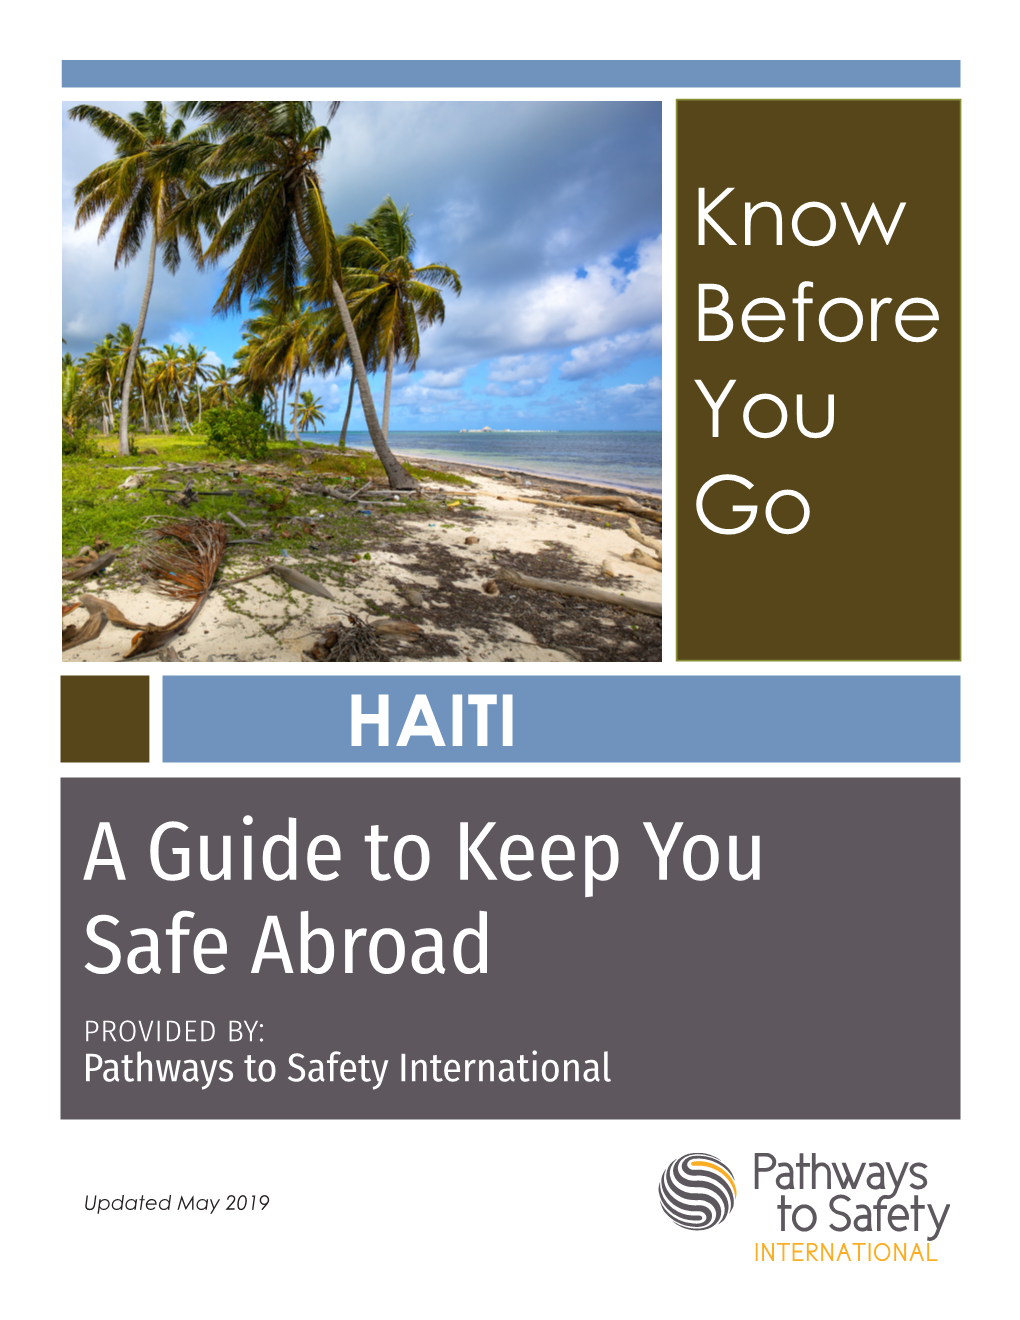 safe travel nz haiti